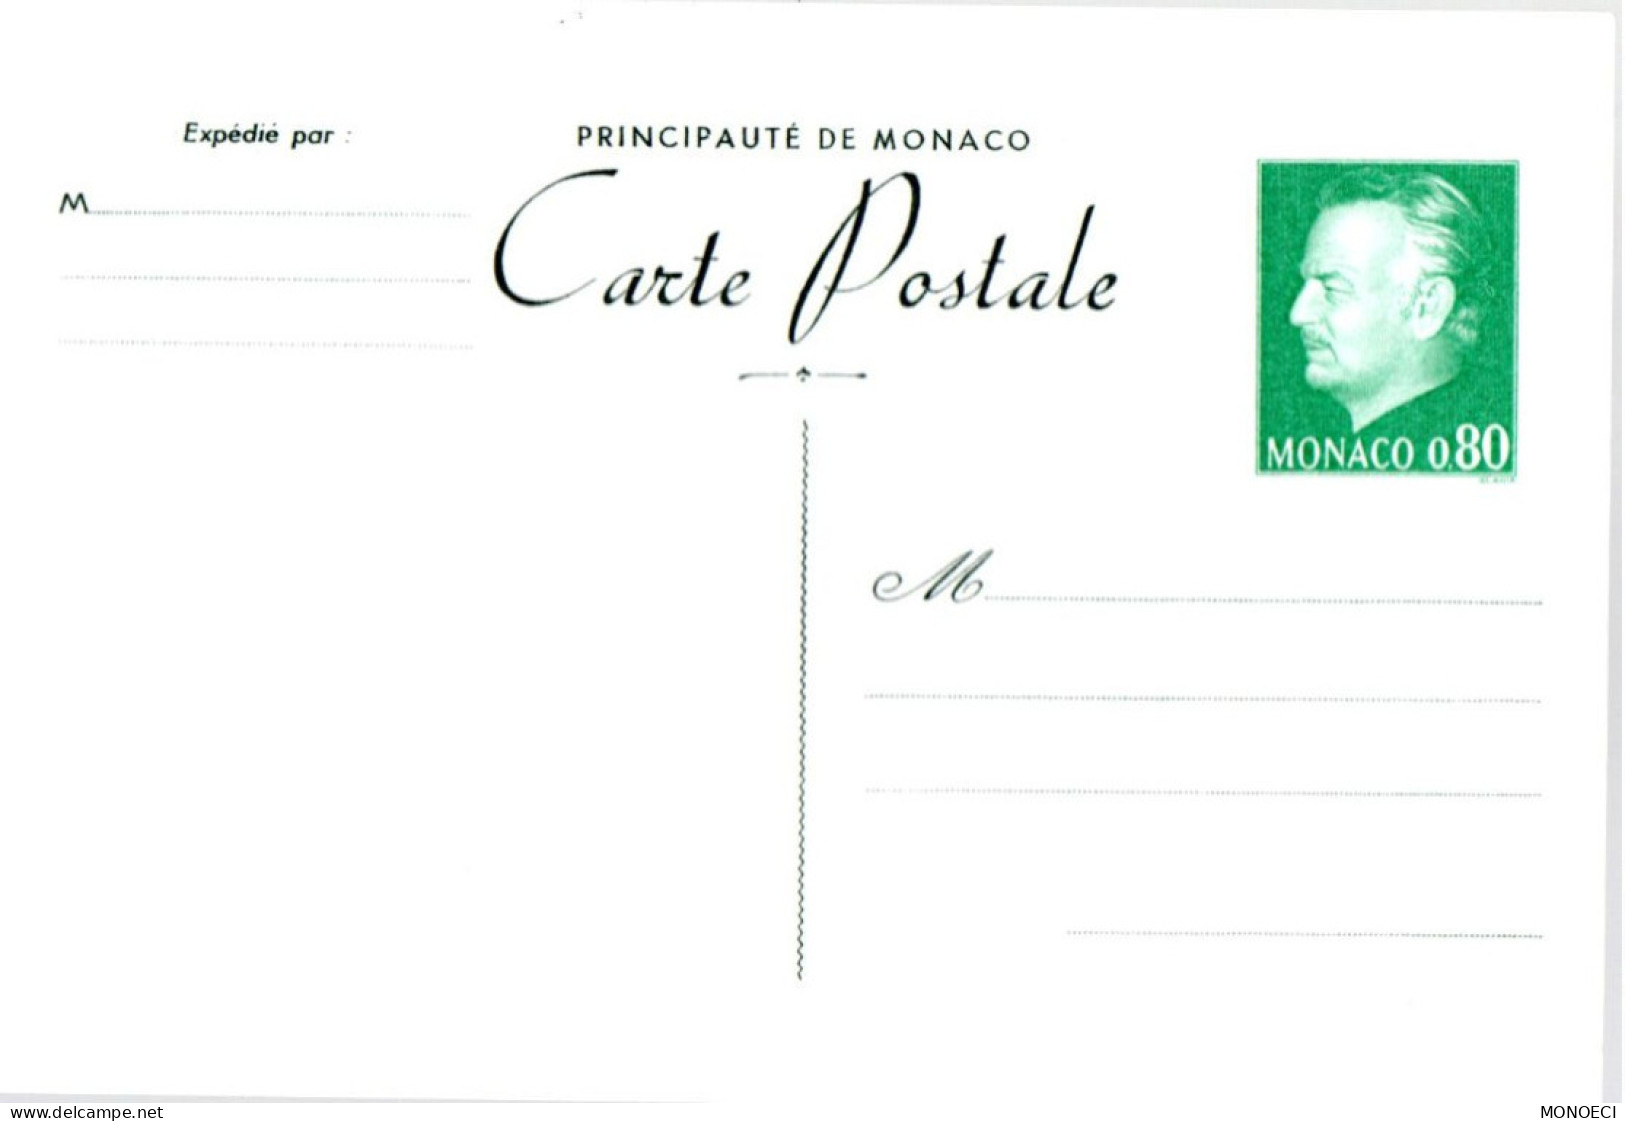 MONACO -- MONTE CARLO -- Monégasque -- ENTIER POSTAL -- CPA -- 0,80 C. Prince Rainier III (1977) - Postal Stationery